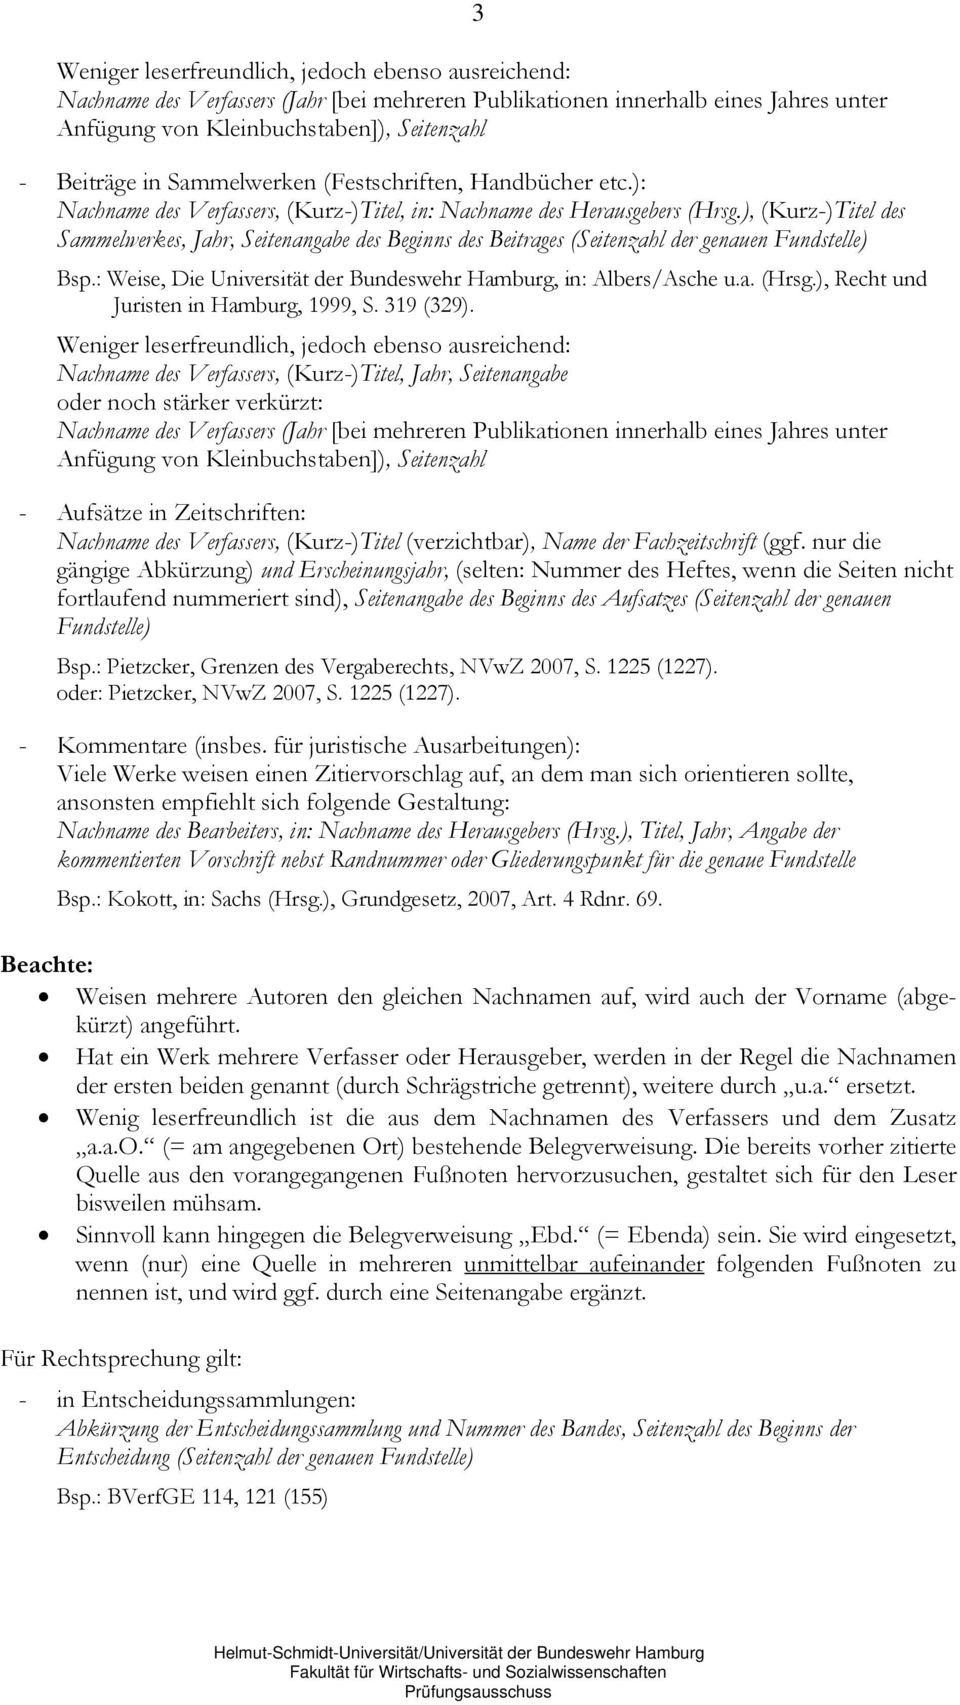 ), (Kurz-)Titel des Sammelwerkes, Jahr, Seitenangabe des Beginns des Beitrages (Seitenzahl der genauen Fundstelle) Bsp.: Weise, Die Universität der Bundeswehr Hamburg, in: Albers/Asche u.a. (Hrsg.